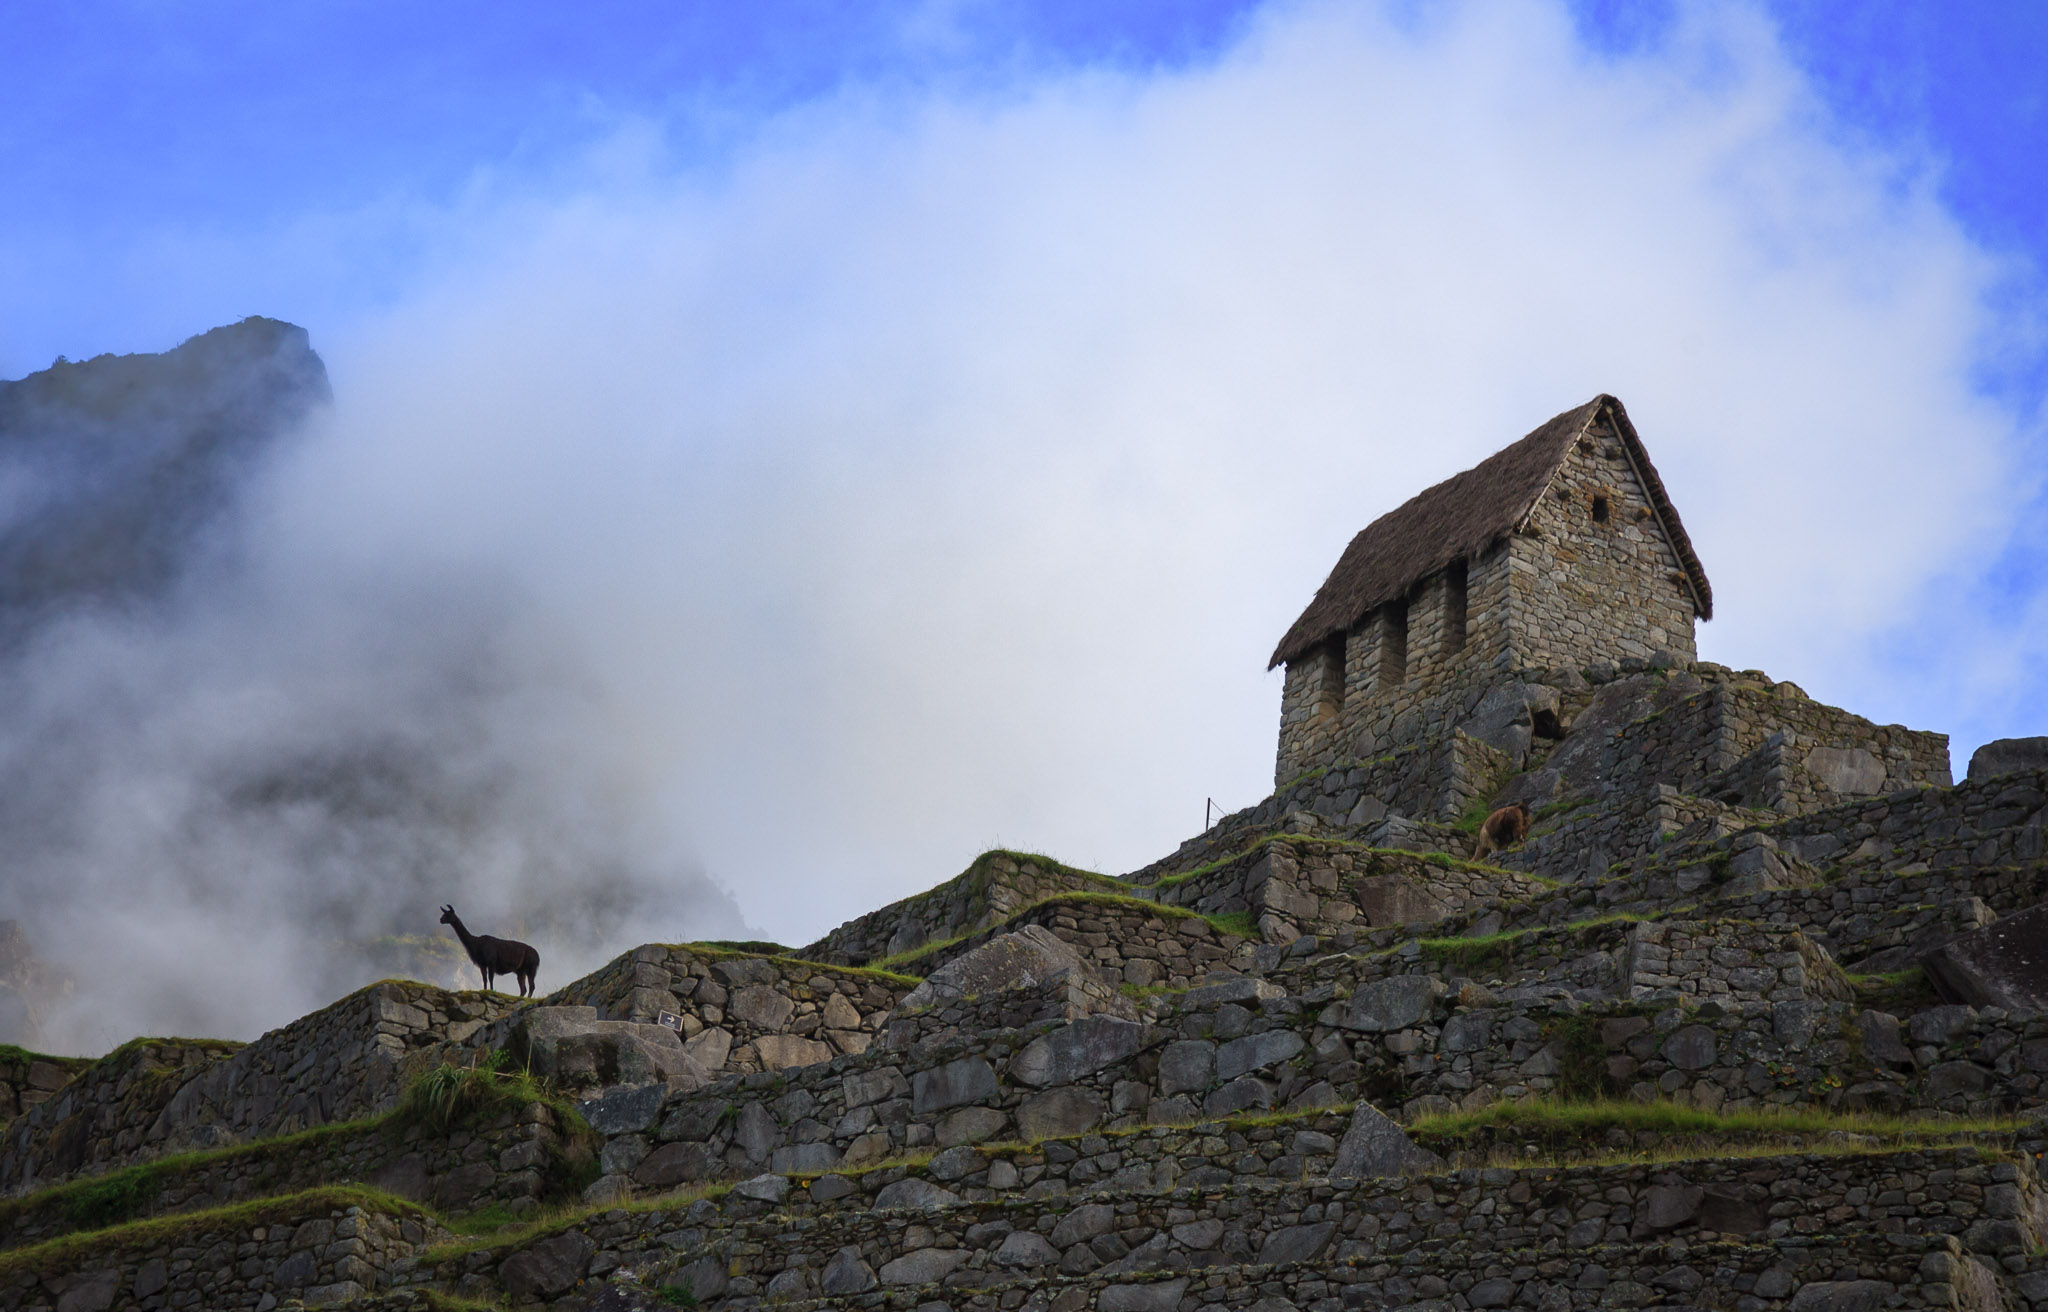 "Watchman's Hut" & Illama, Machu Picchu